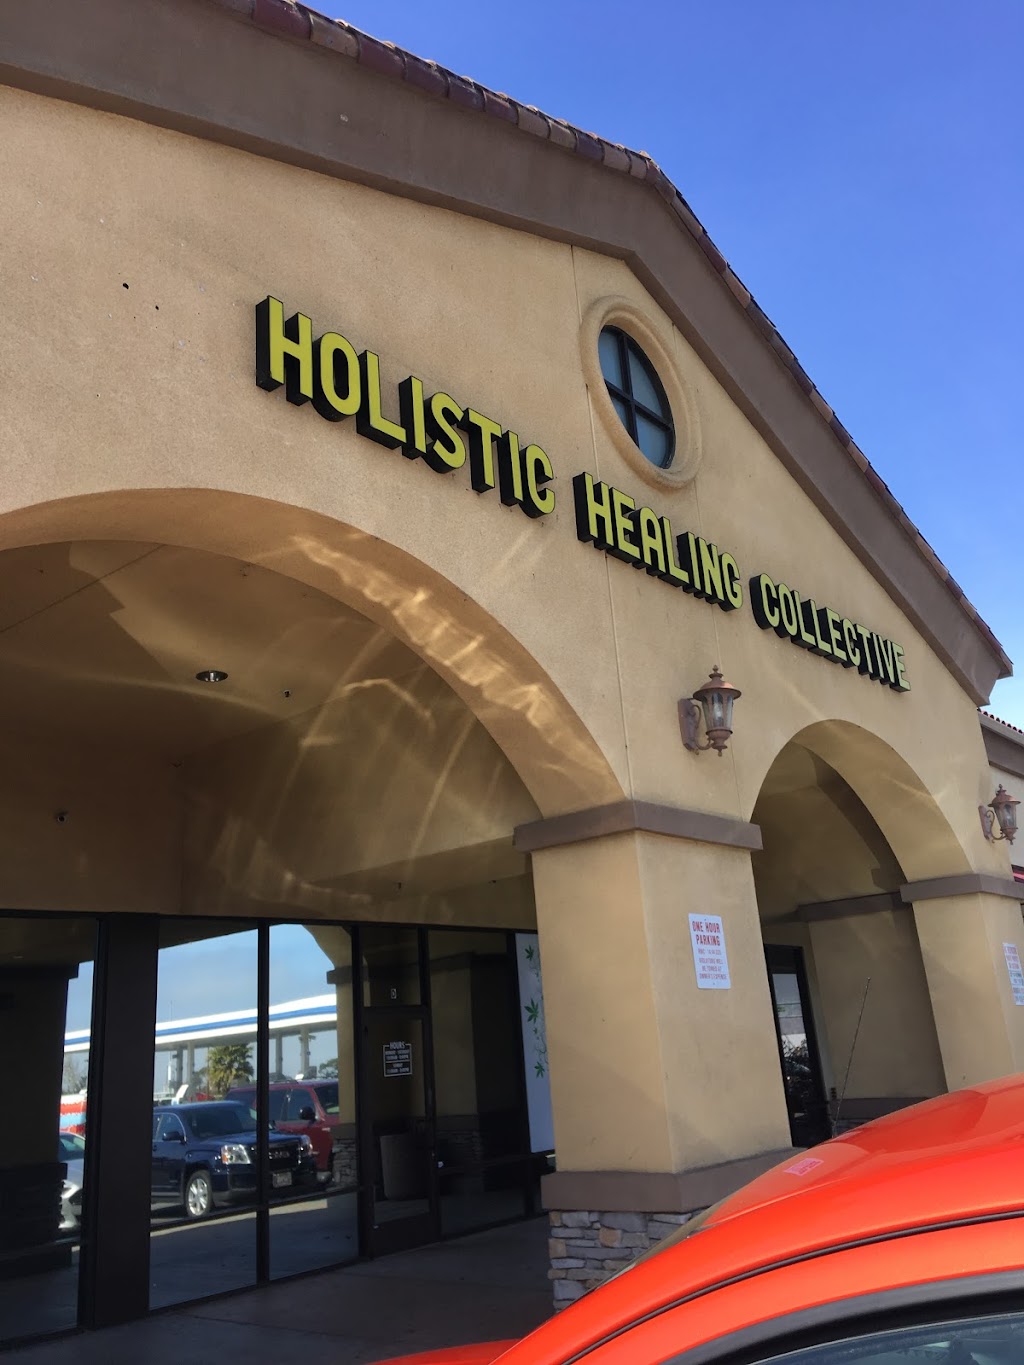 Holistic Healing Collective | 15501 San Pablo Ave suite C & D, Richmond, CA 94806, USA | Phone: (510) 275-3365